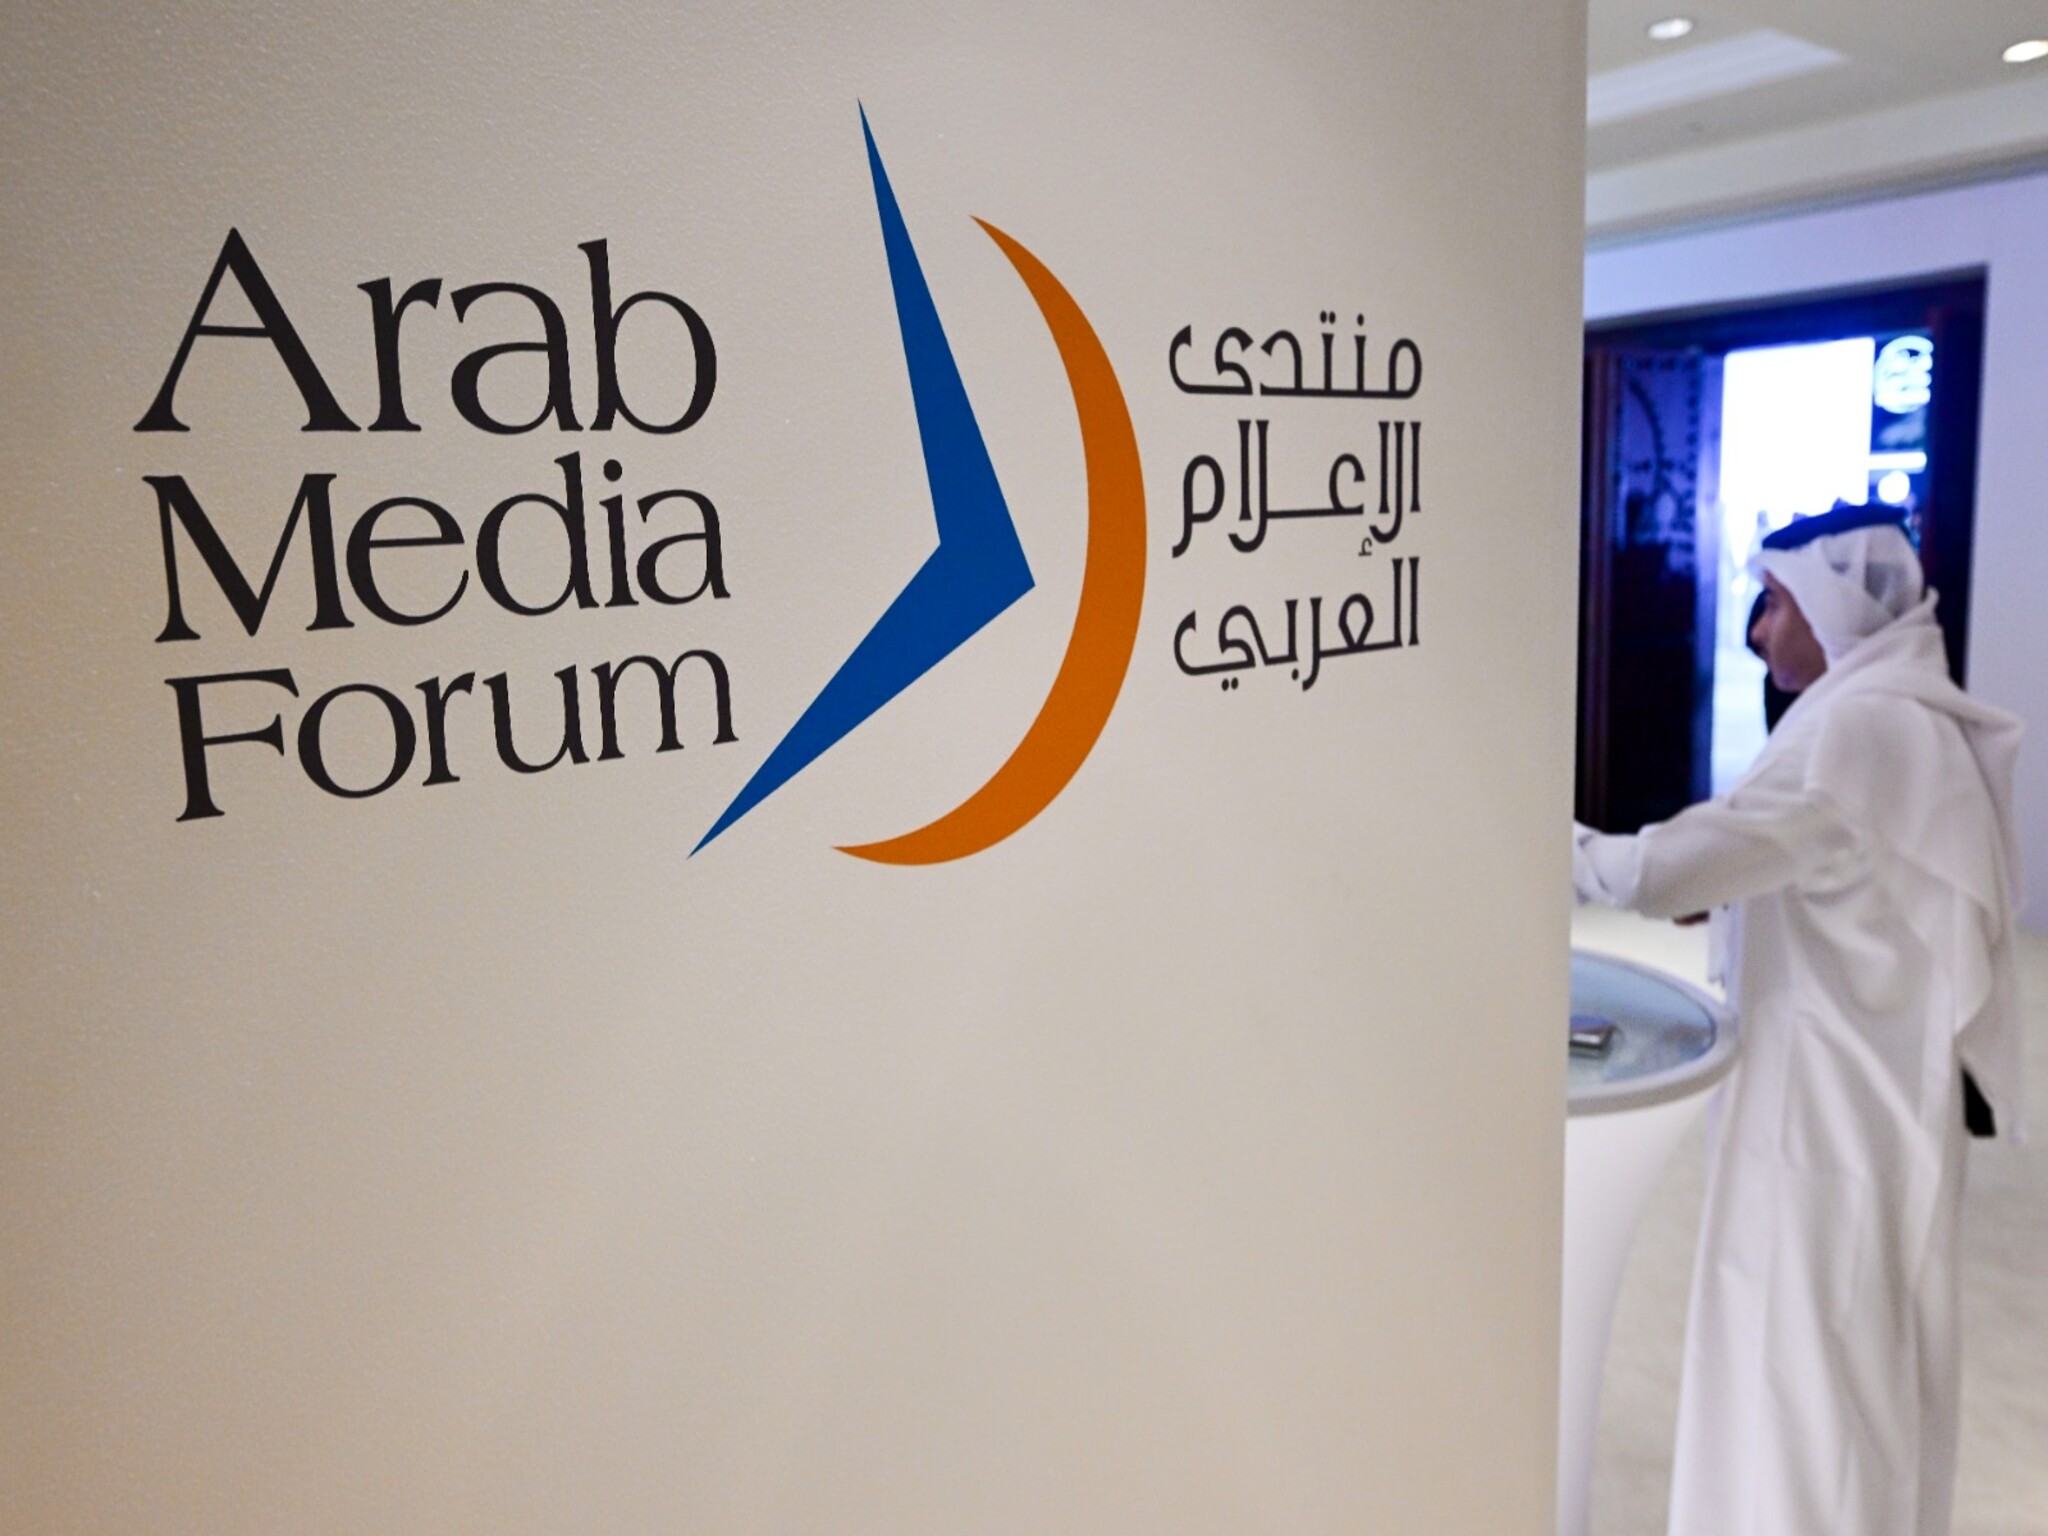 موعد إنطلاق فعاليات النسخة الثانية والعشرون من "منتدى الإعلام العربي" في دبي